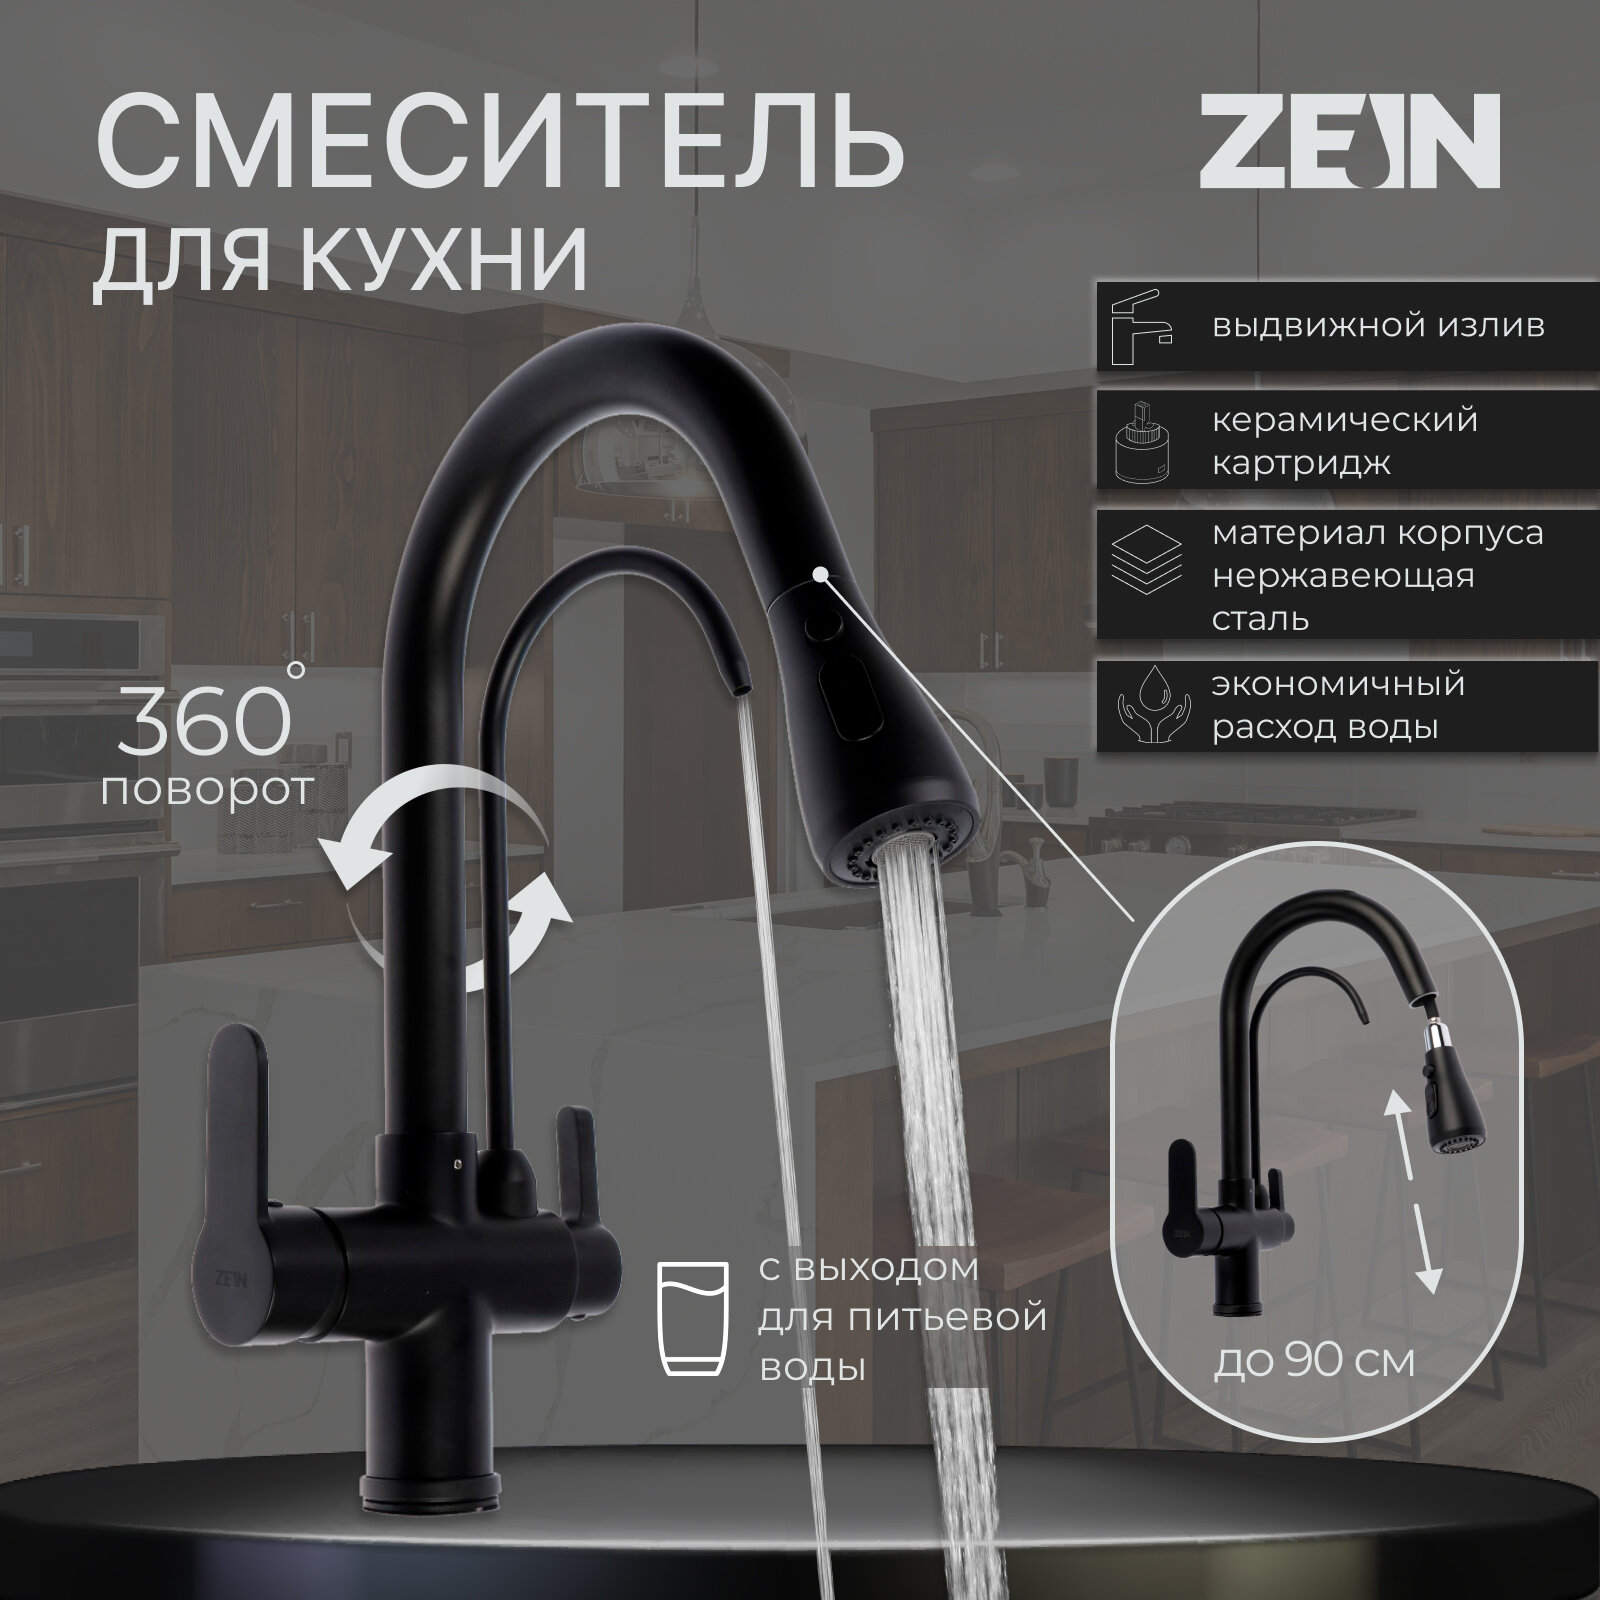 Смеситель для кухни ZEIN Z7212, кран для питьевой воды, с выдвижным изливом, латунь, черный